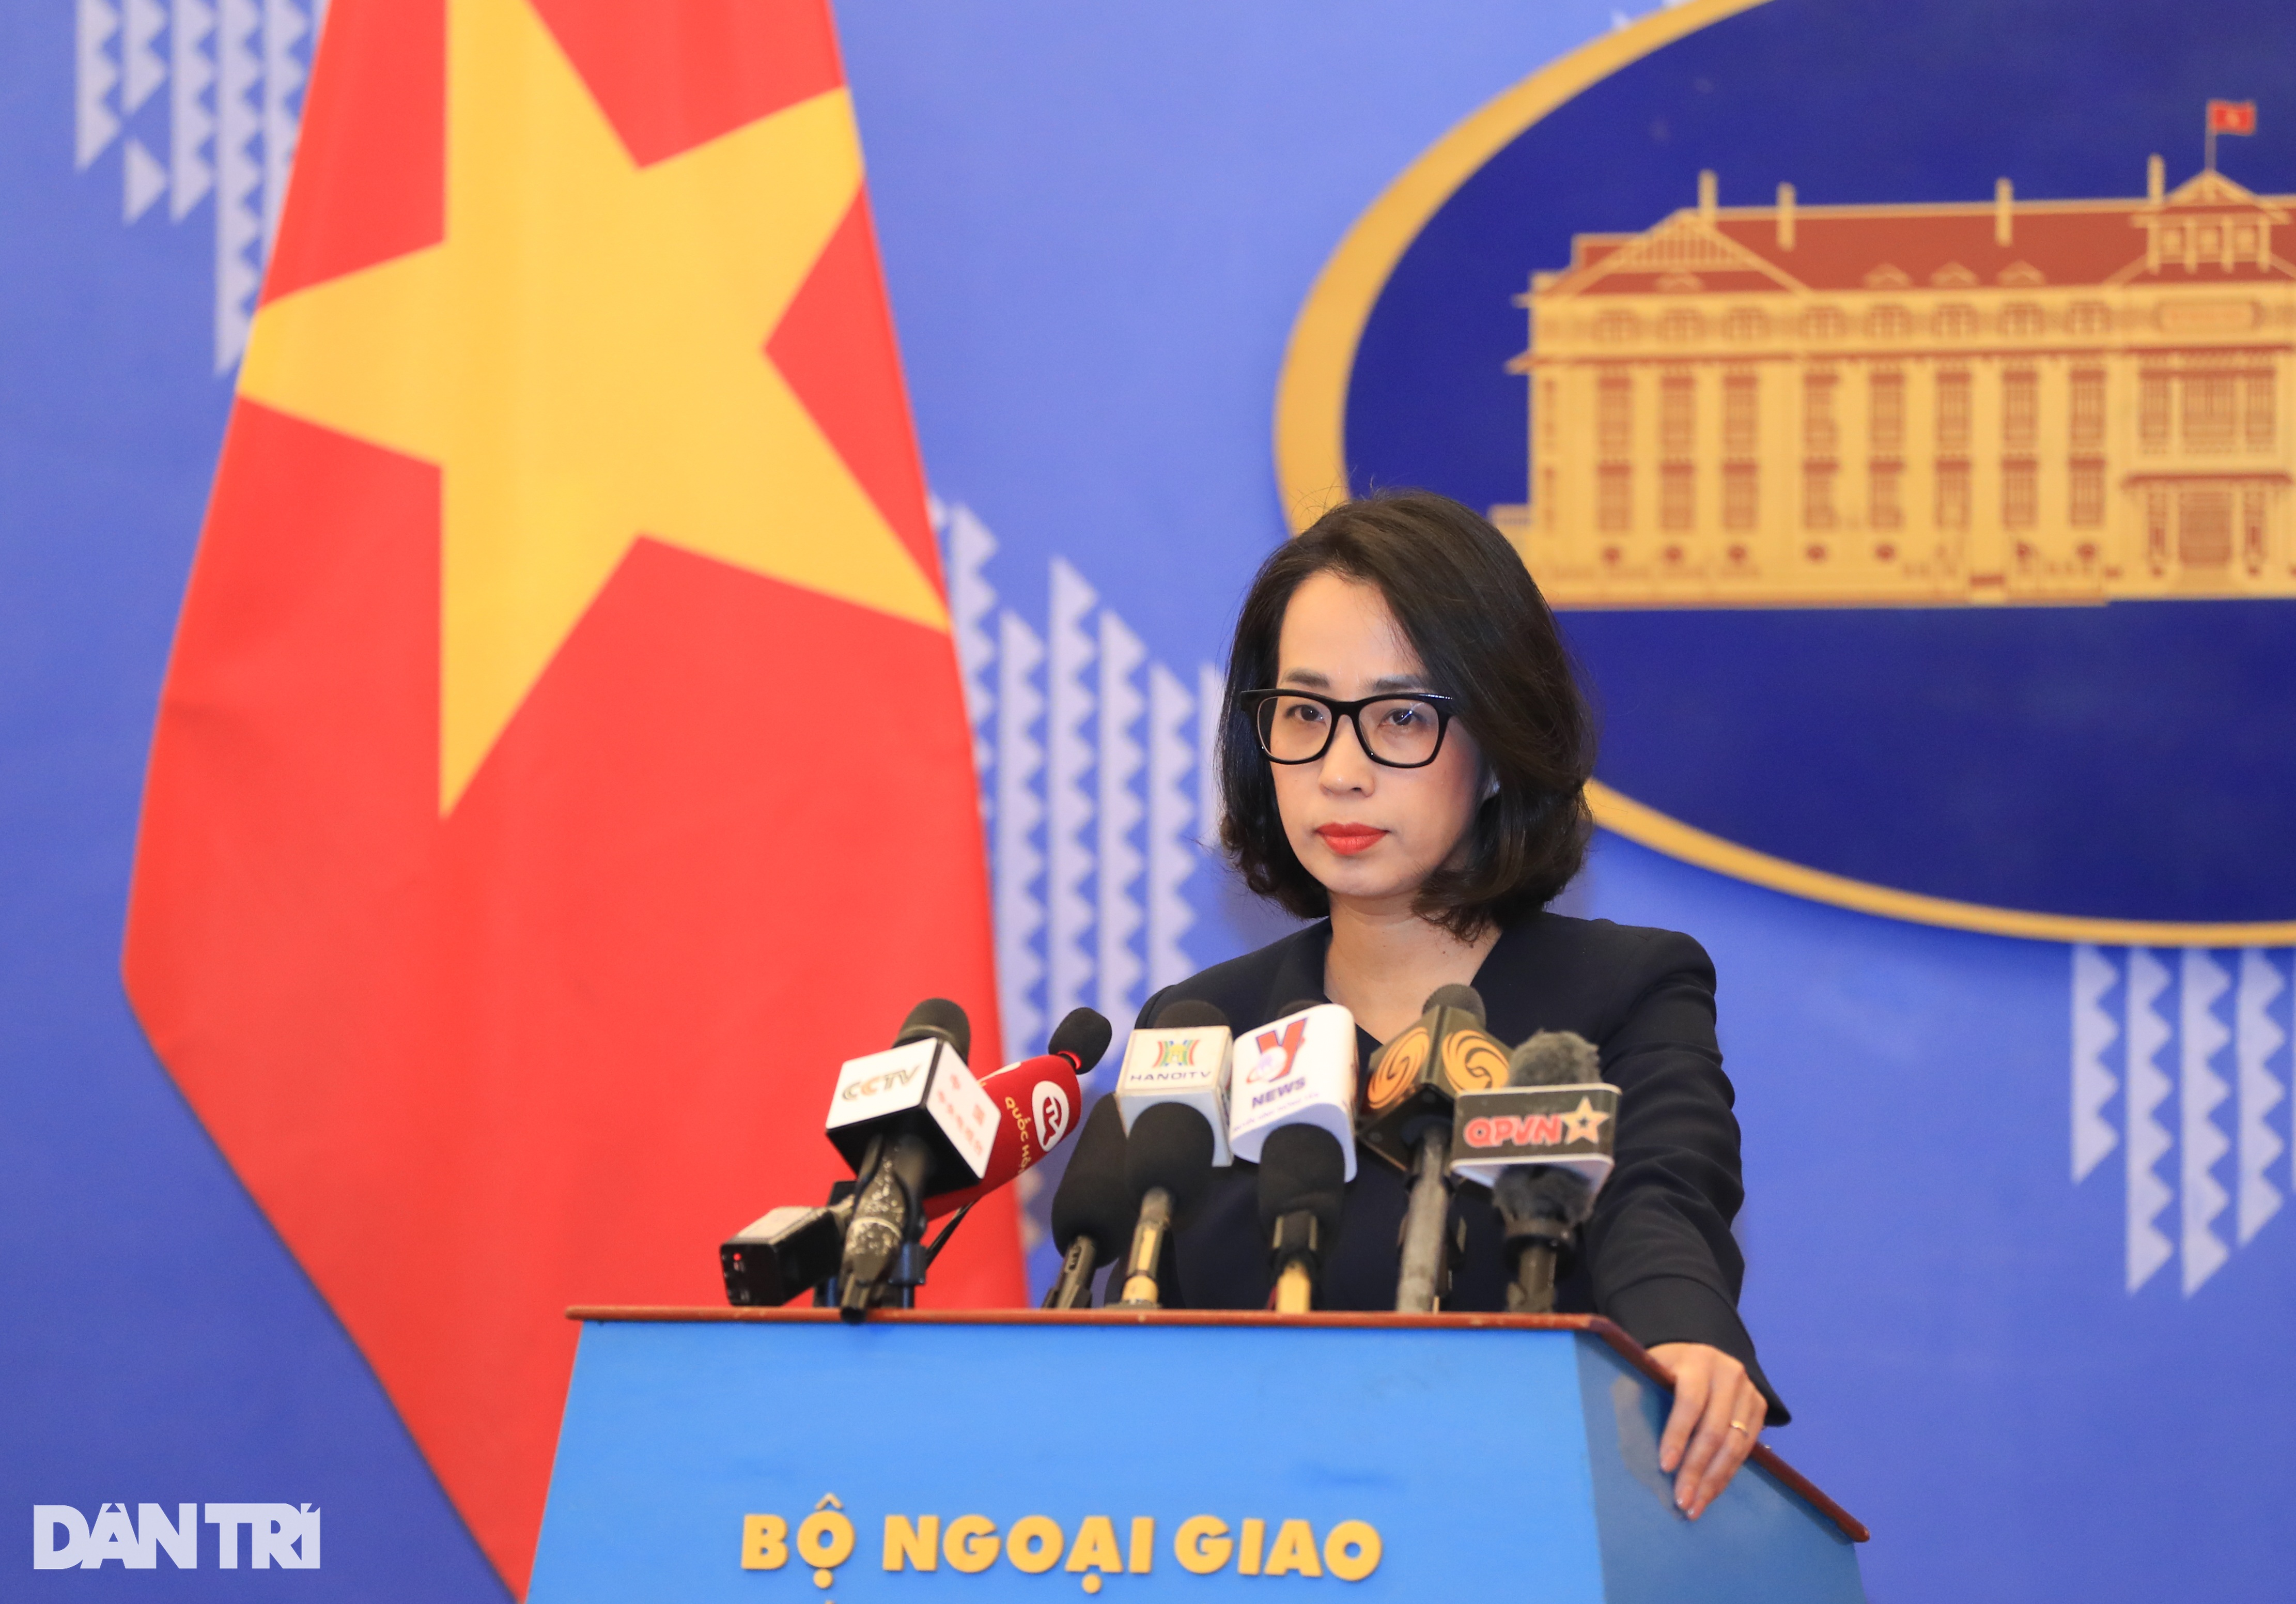 Việt Nam nói gì về bình luận kích động trên tài khoản của ông Hun Sen? - 1